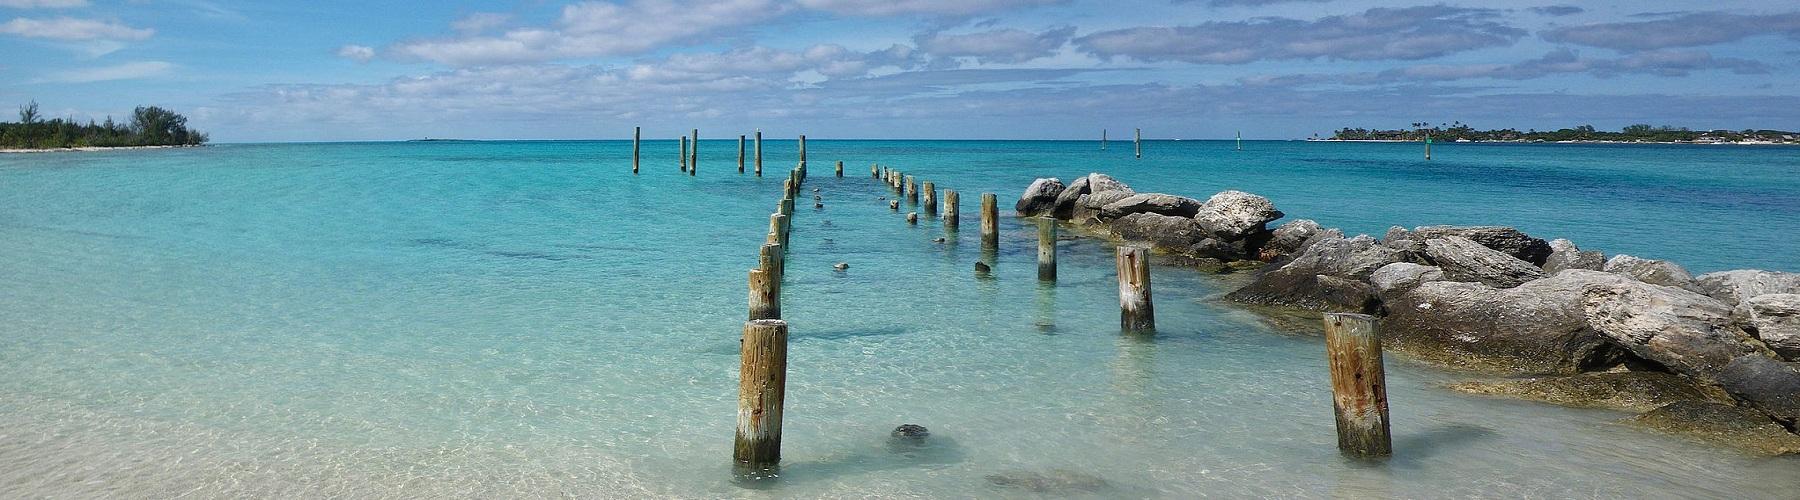 Отдых на Багамских островах